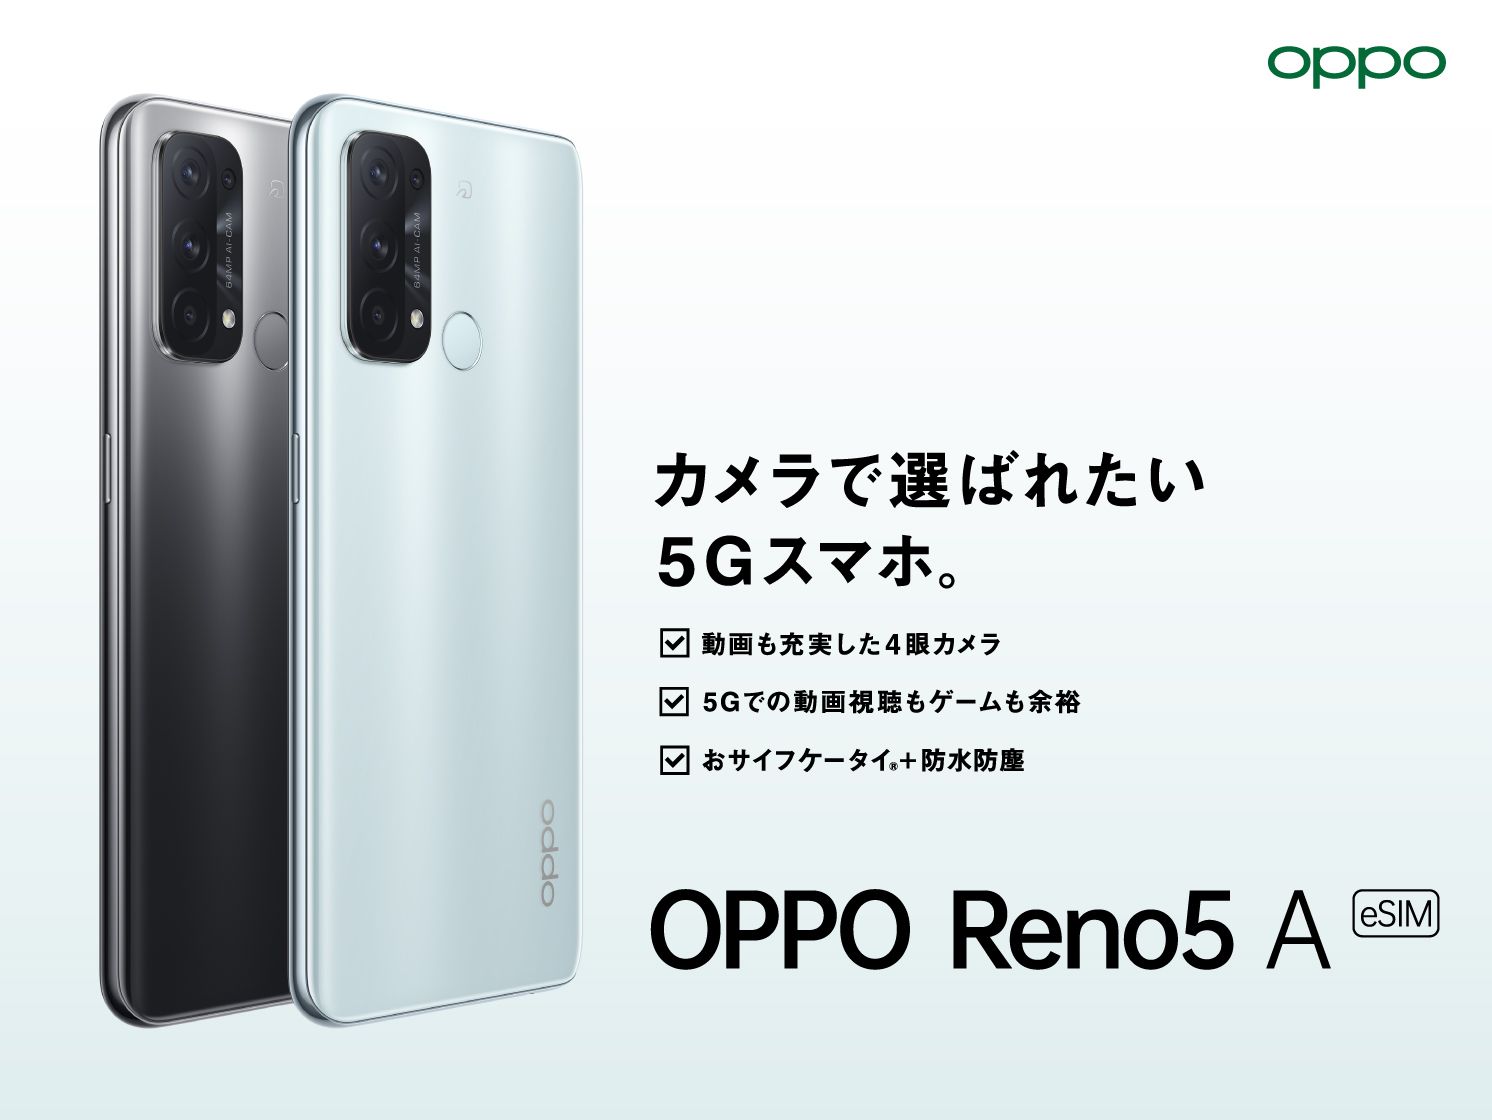 OPPO Reno5 A (eSIM)」がワイモバイルにて 2月24日(木)から発売開始 